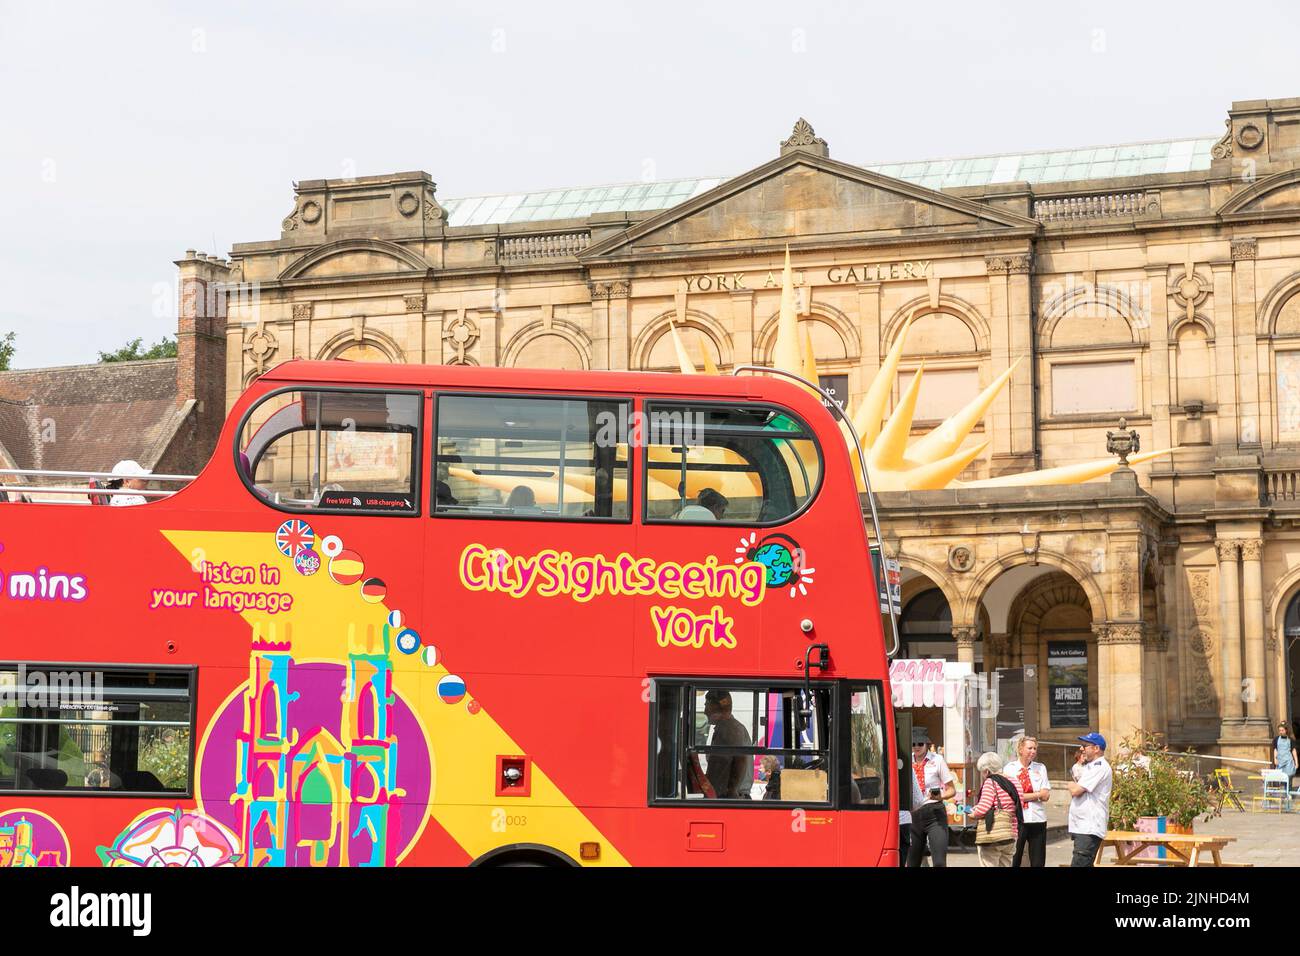 Centro de York, autobús turístico de dos pisos rojo pasa galería de arte de York, Yorkshire del Norte, Inglaterra, Reino Unido, verano de 2022 Foto de stock